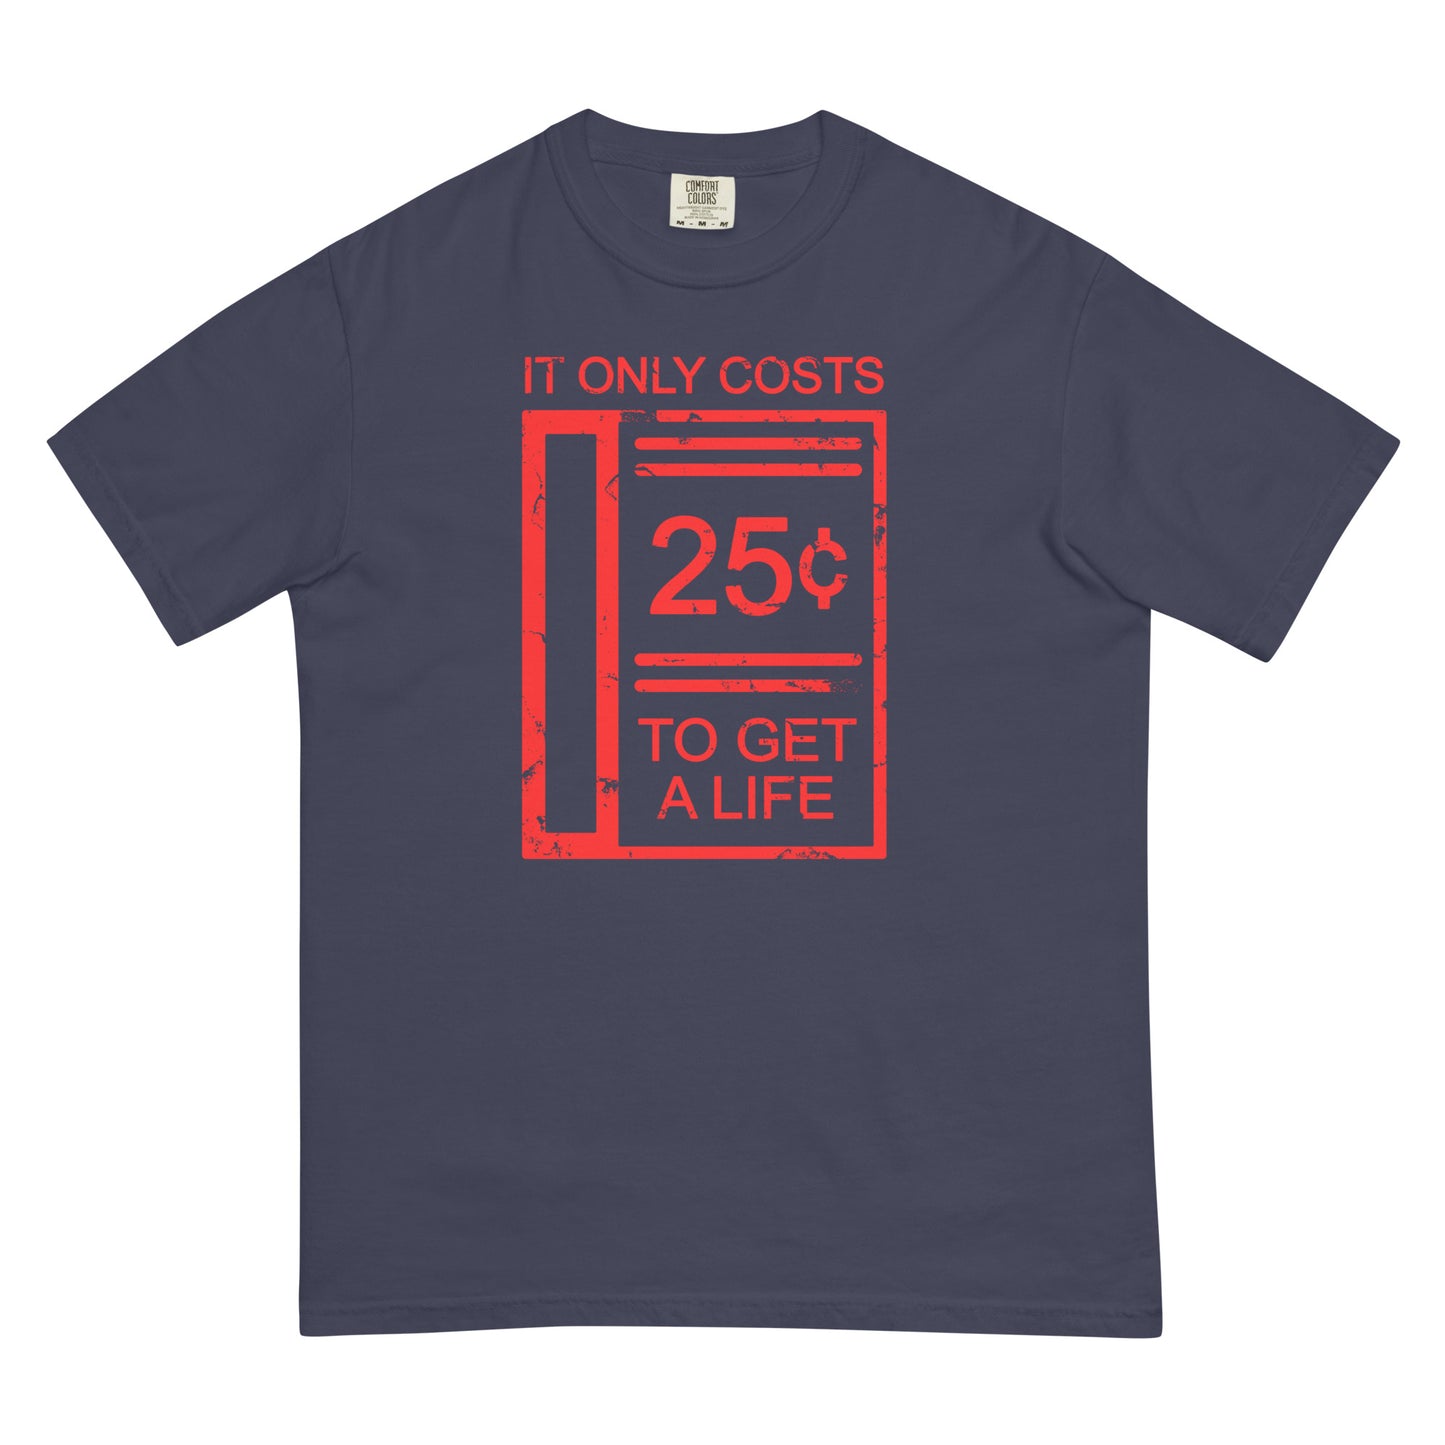 Get a Life garment-dyed heavyweight t-shirt